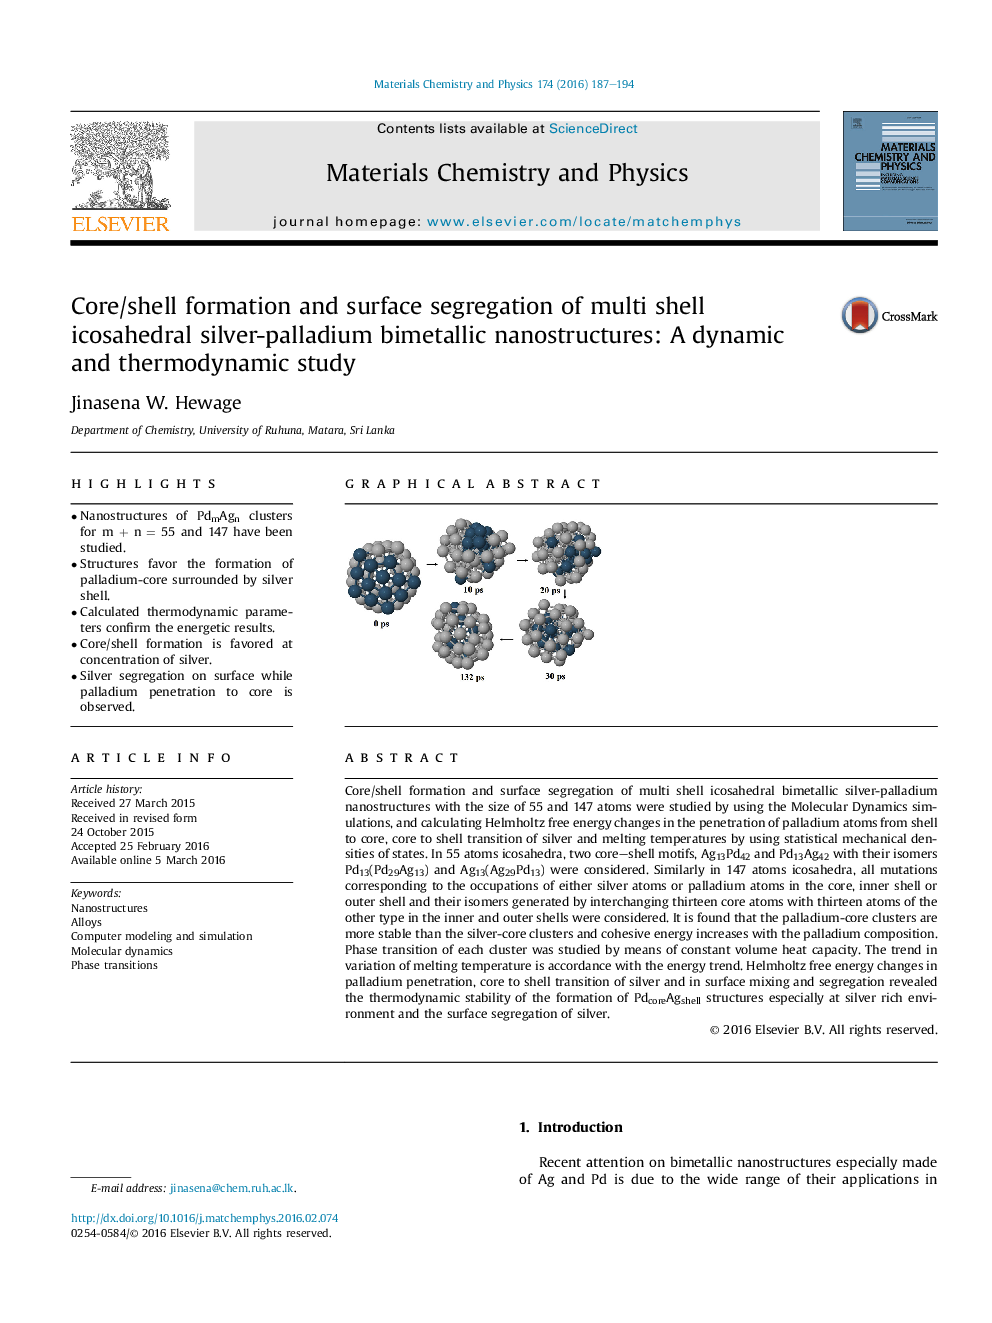 تشکیل هسته / پوسته و جداسازی سطحی نانوساختارهای دو فلزی نقره ای پالادیوم با الیاف شیشه ای چند پوسته: یک مطالعه پویا و ترمودینامیکی 